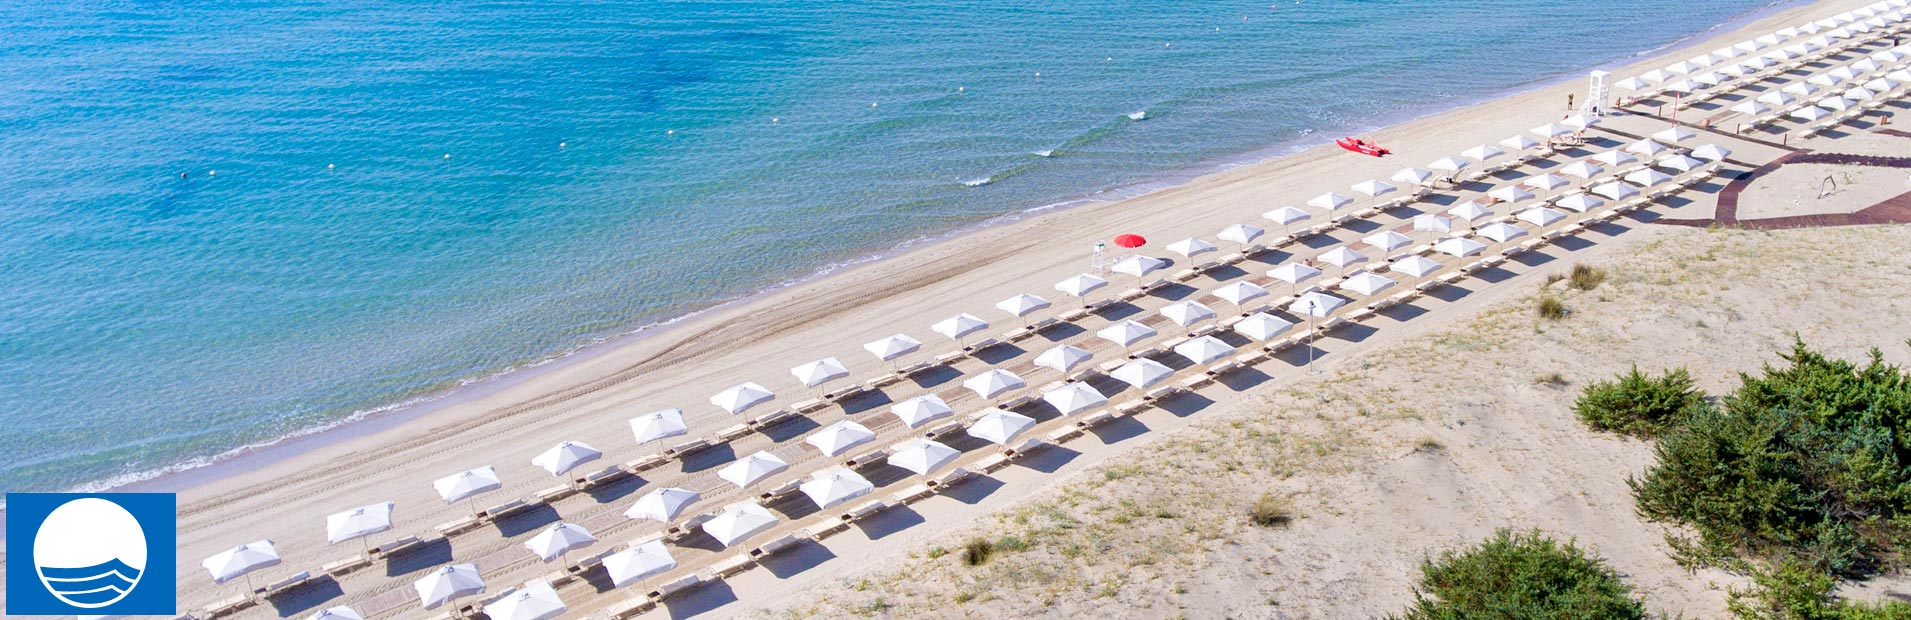 Kalidria hotel puglia spiaggia bandiera blu mod